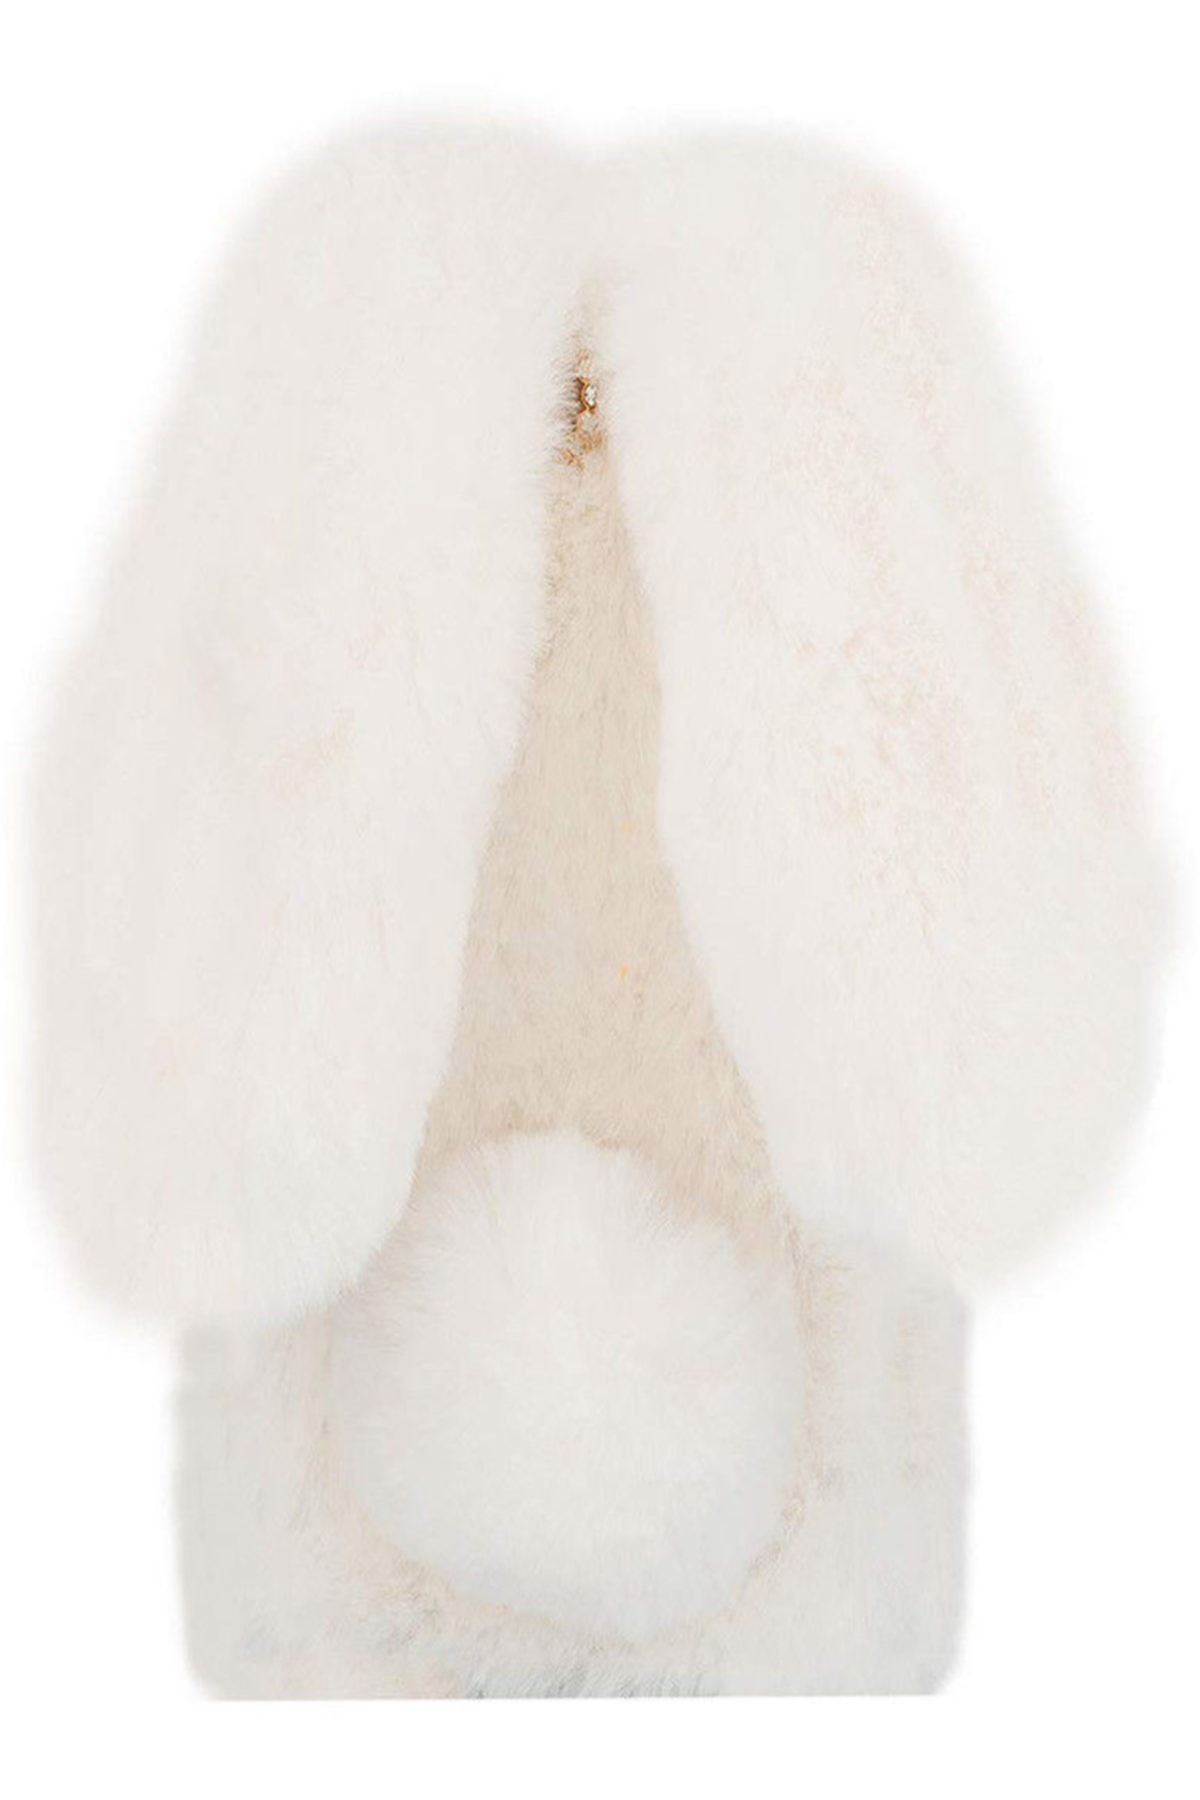 TahTicMer Oppo Reno 10x Zoom Kılıf Peluş Tüylü Tavşan Kulak Silikon Tpu Kapak Beyaz